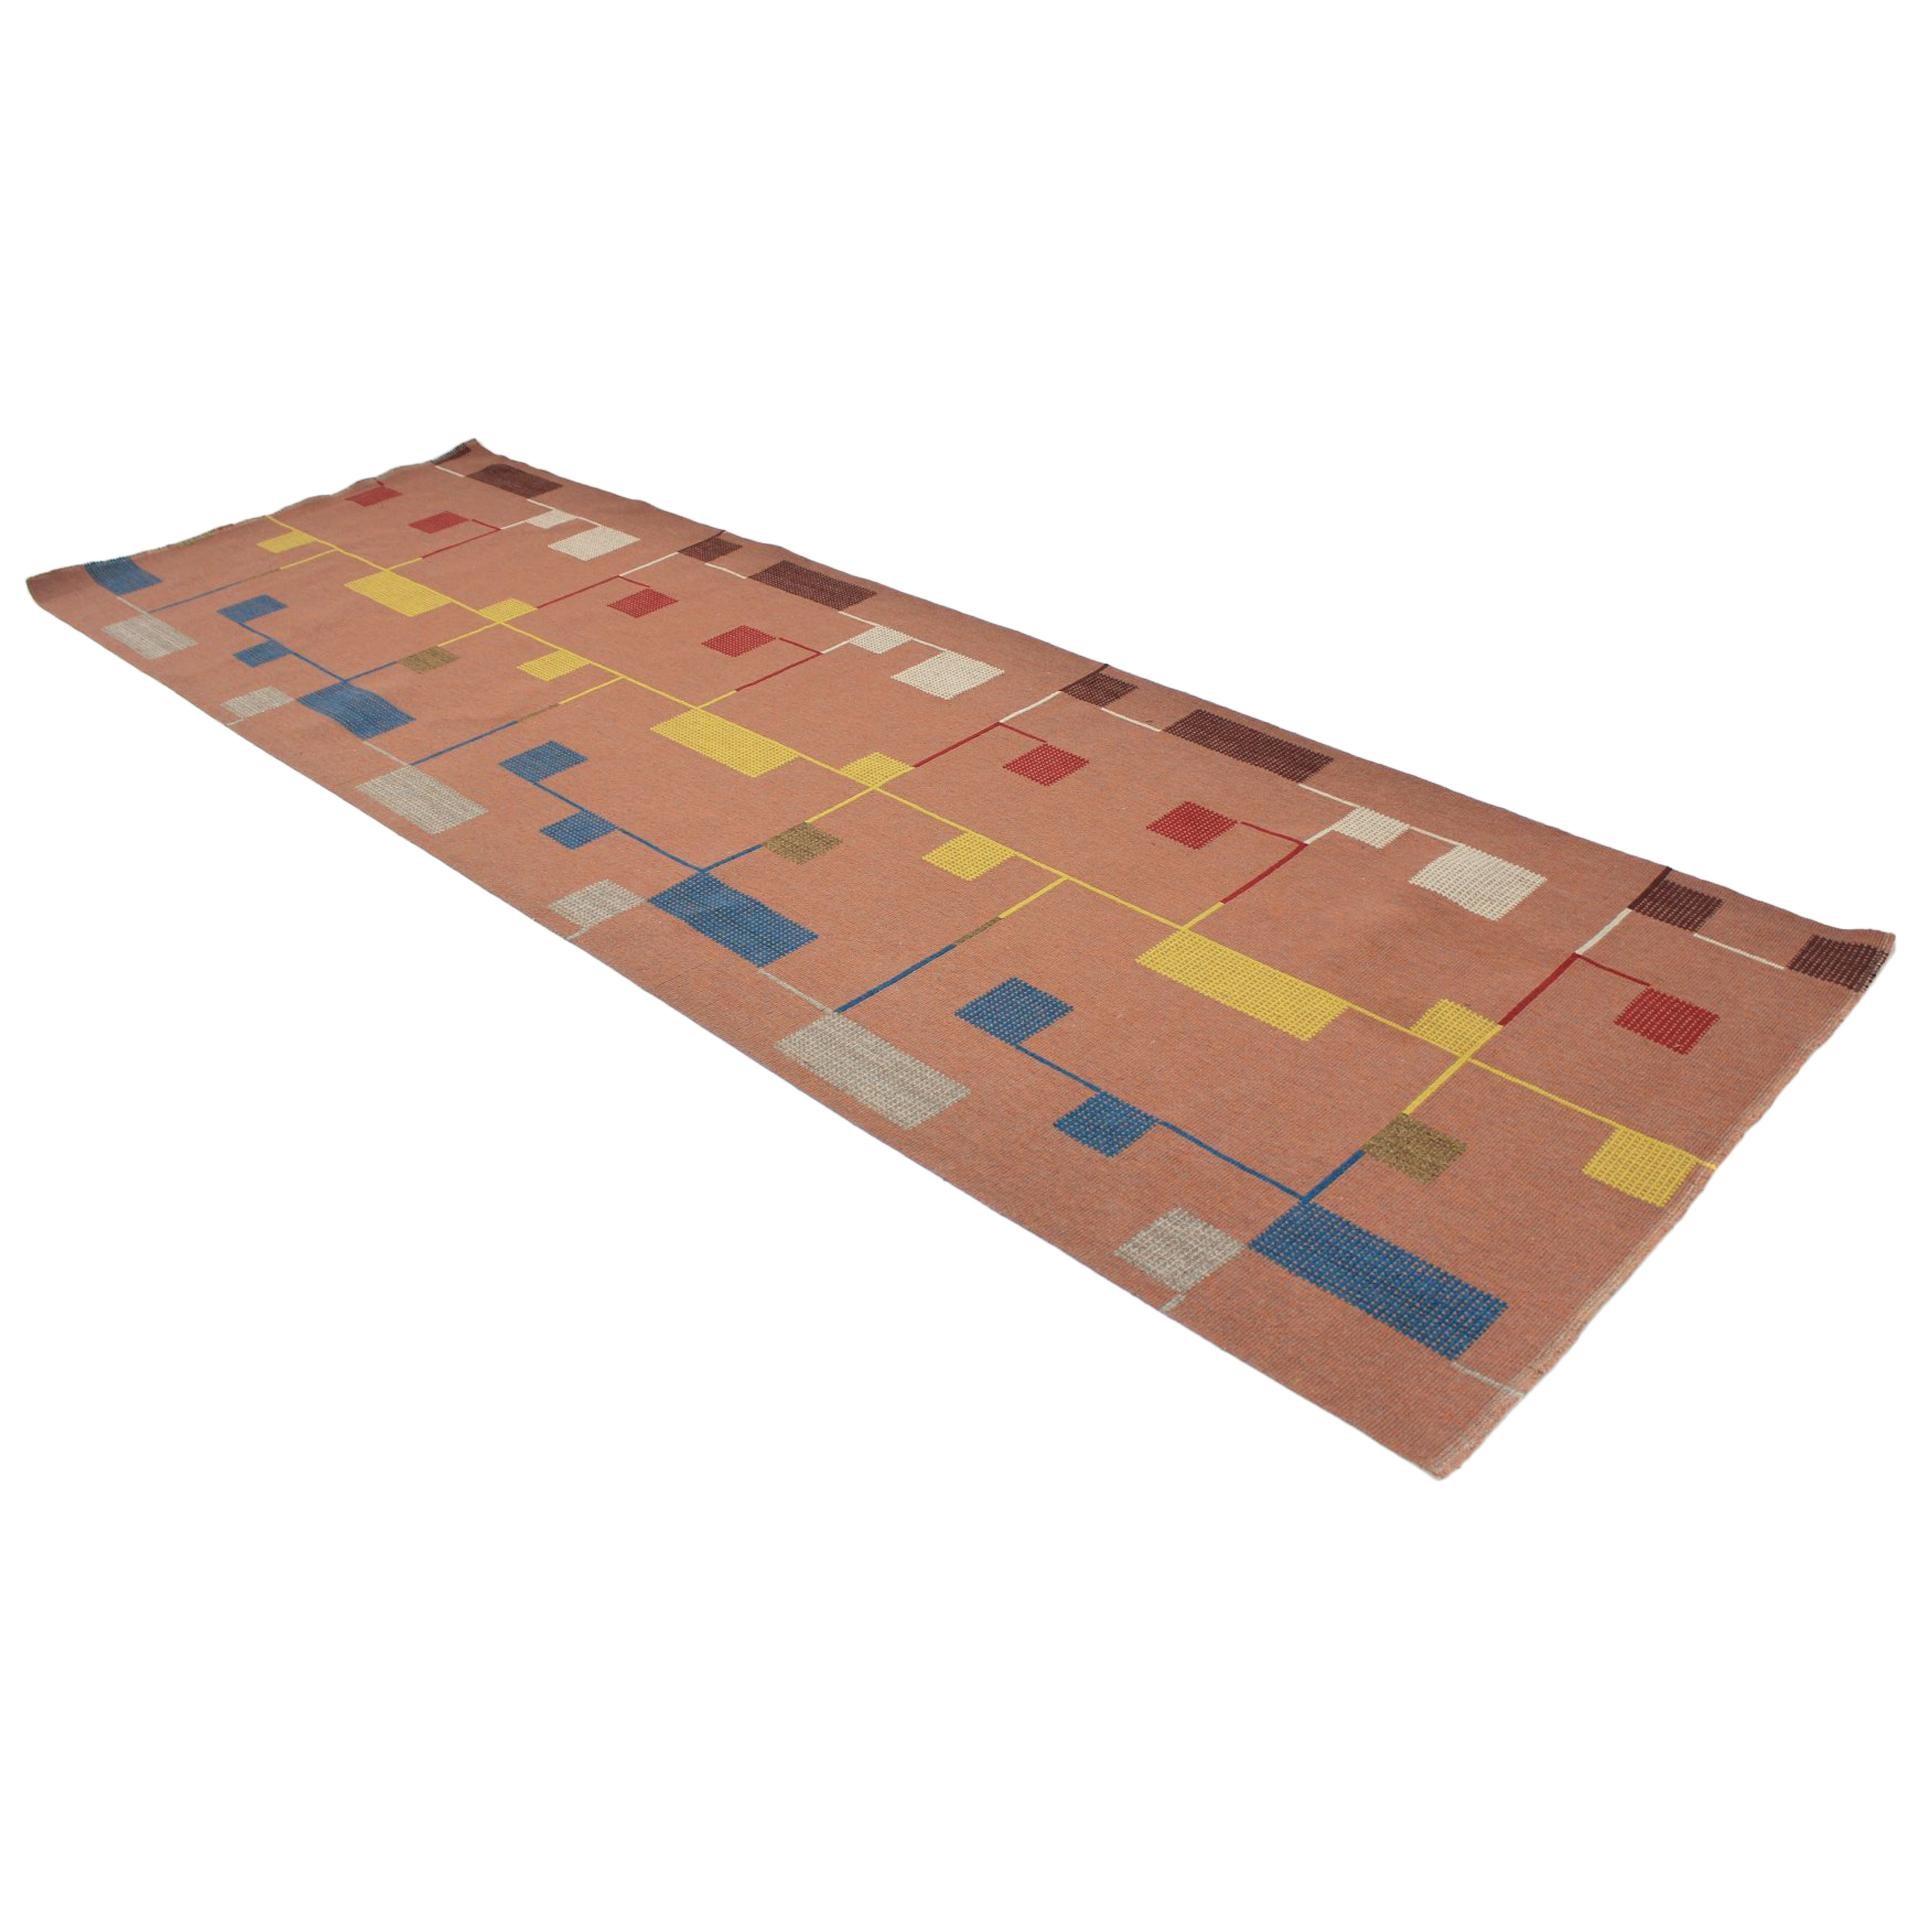 Bauhaus Style Carpet / Rug